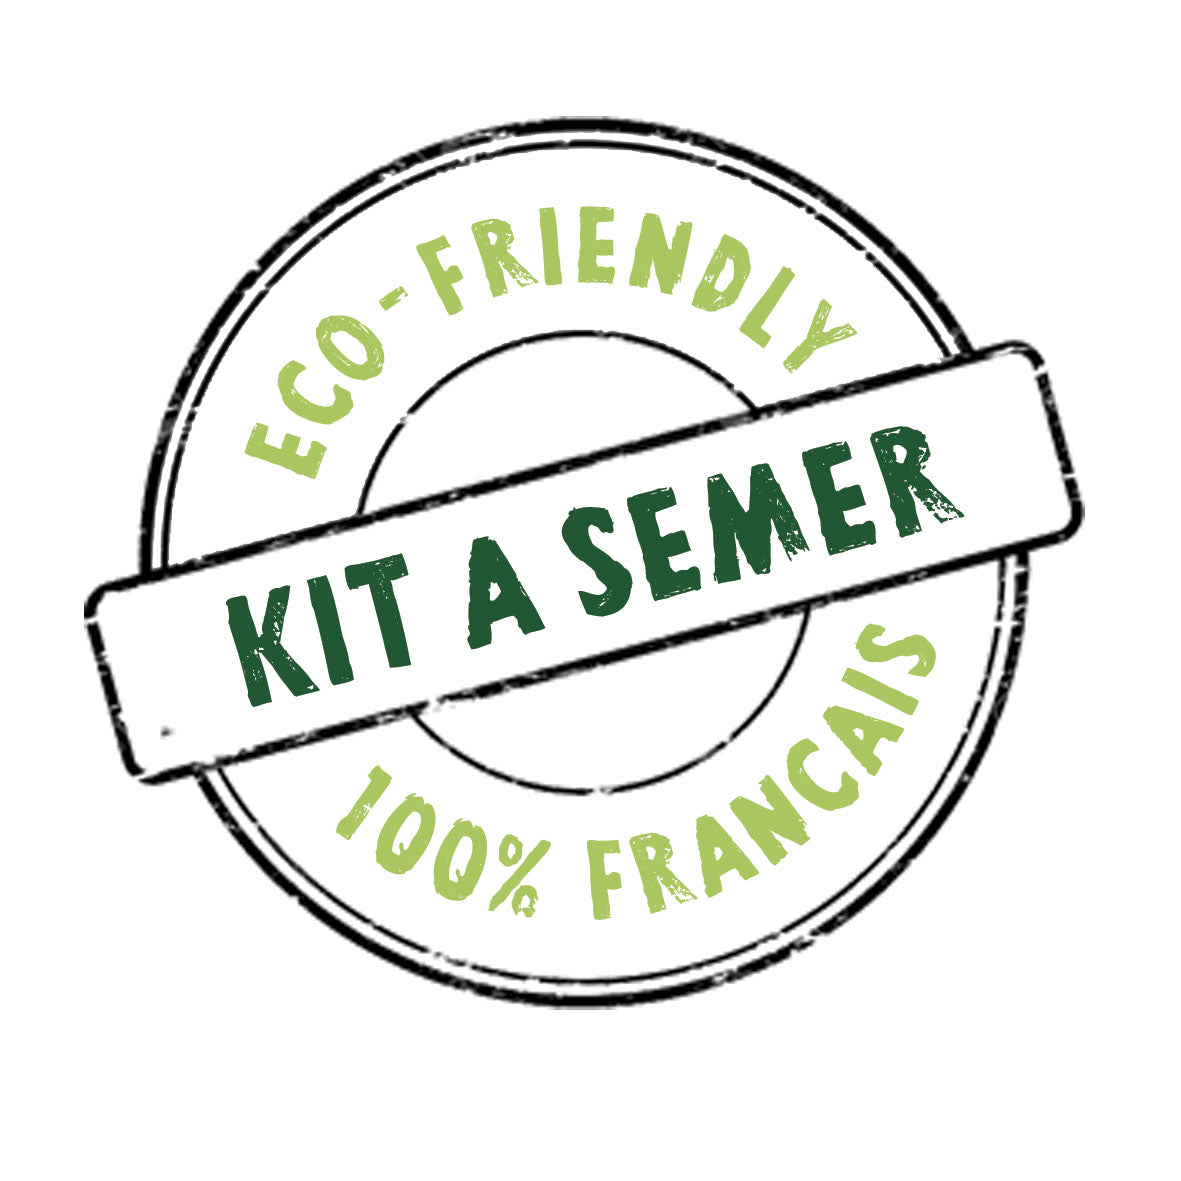 Kit à semer  "Joyeuses Fêtes" Fabriqué en France